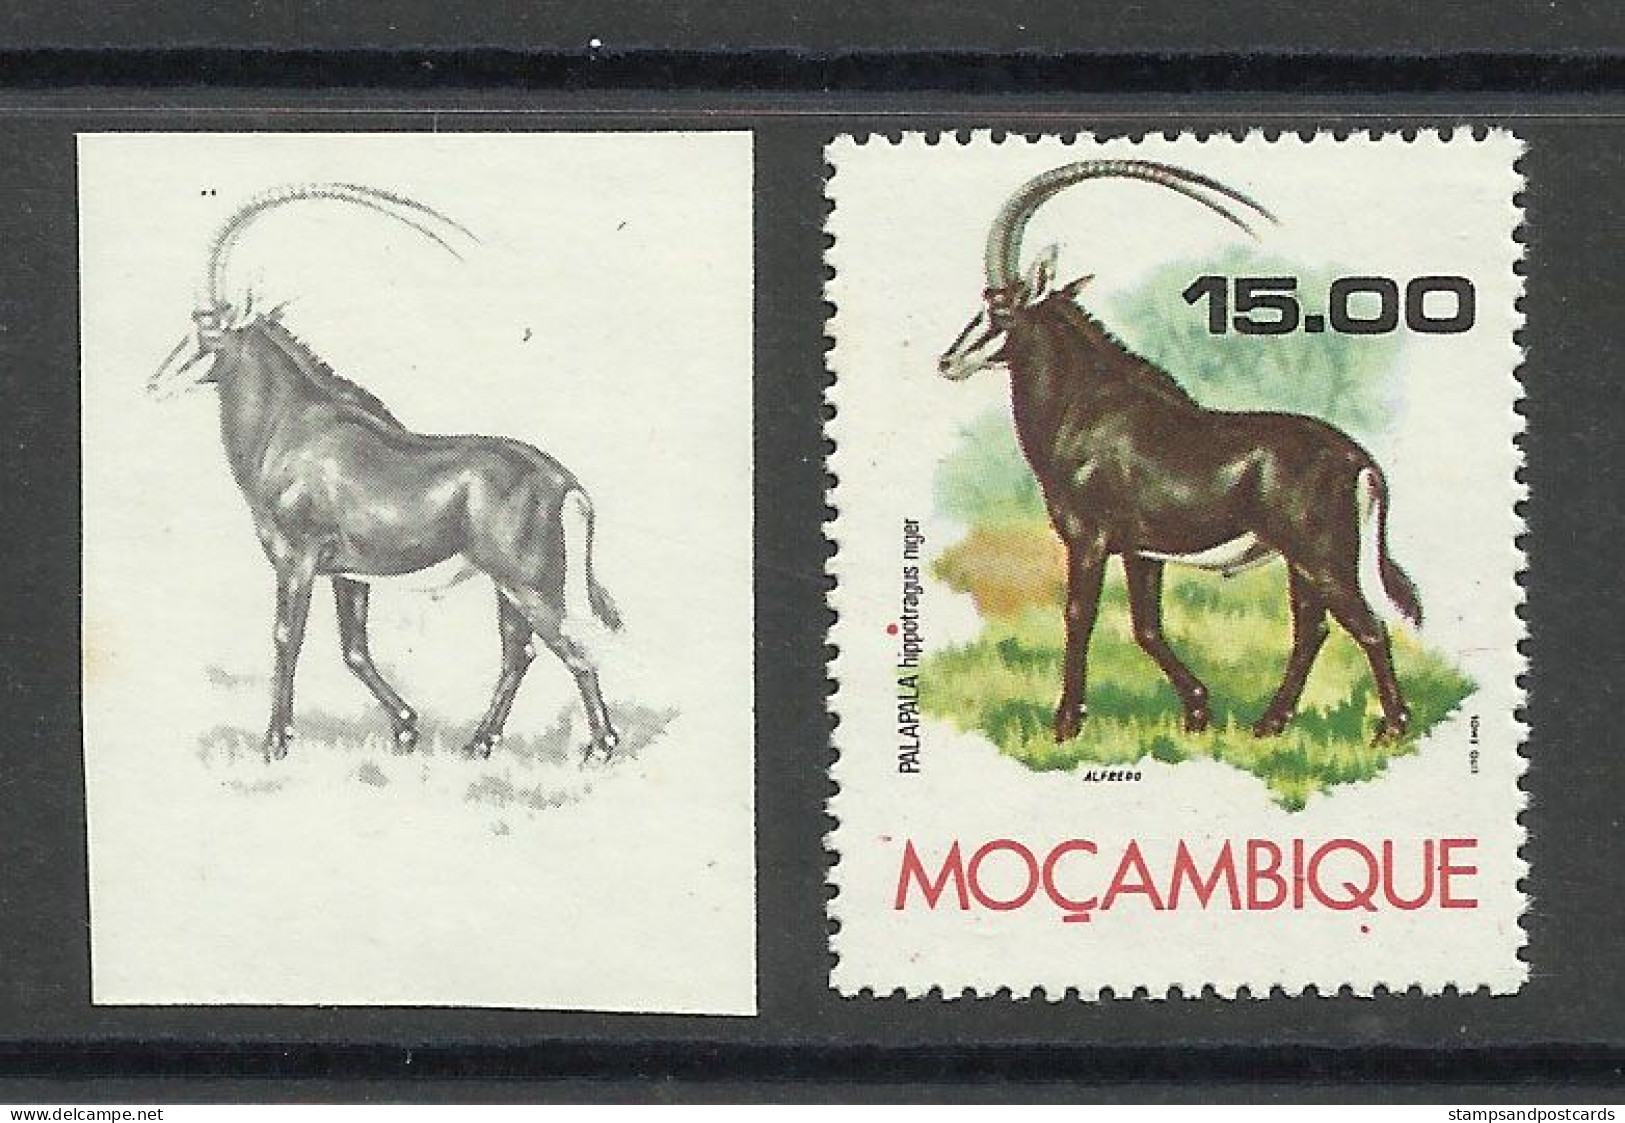 Mozambique 1976 Preuve De Couleur Hippotrague Noir Moçambique 1976 Color Proof Sable Antelope - Rinocerontes